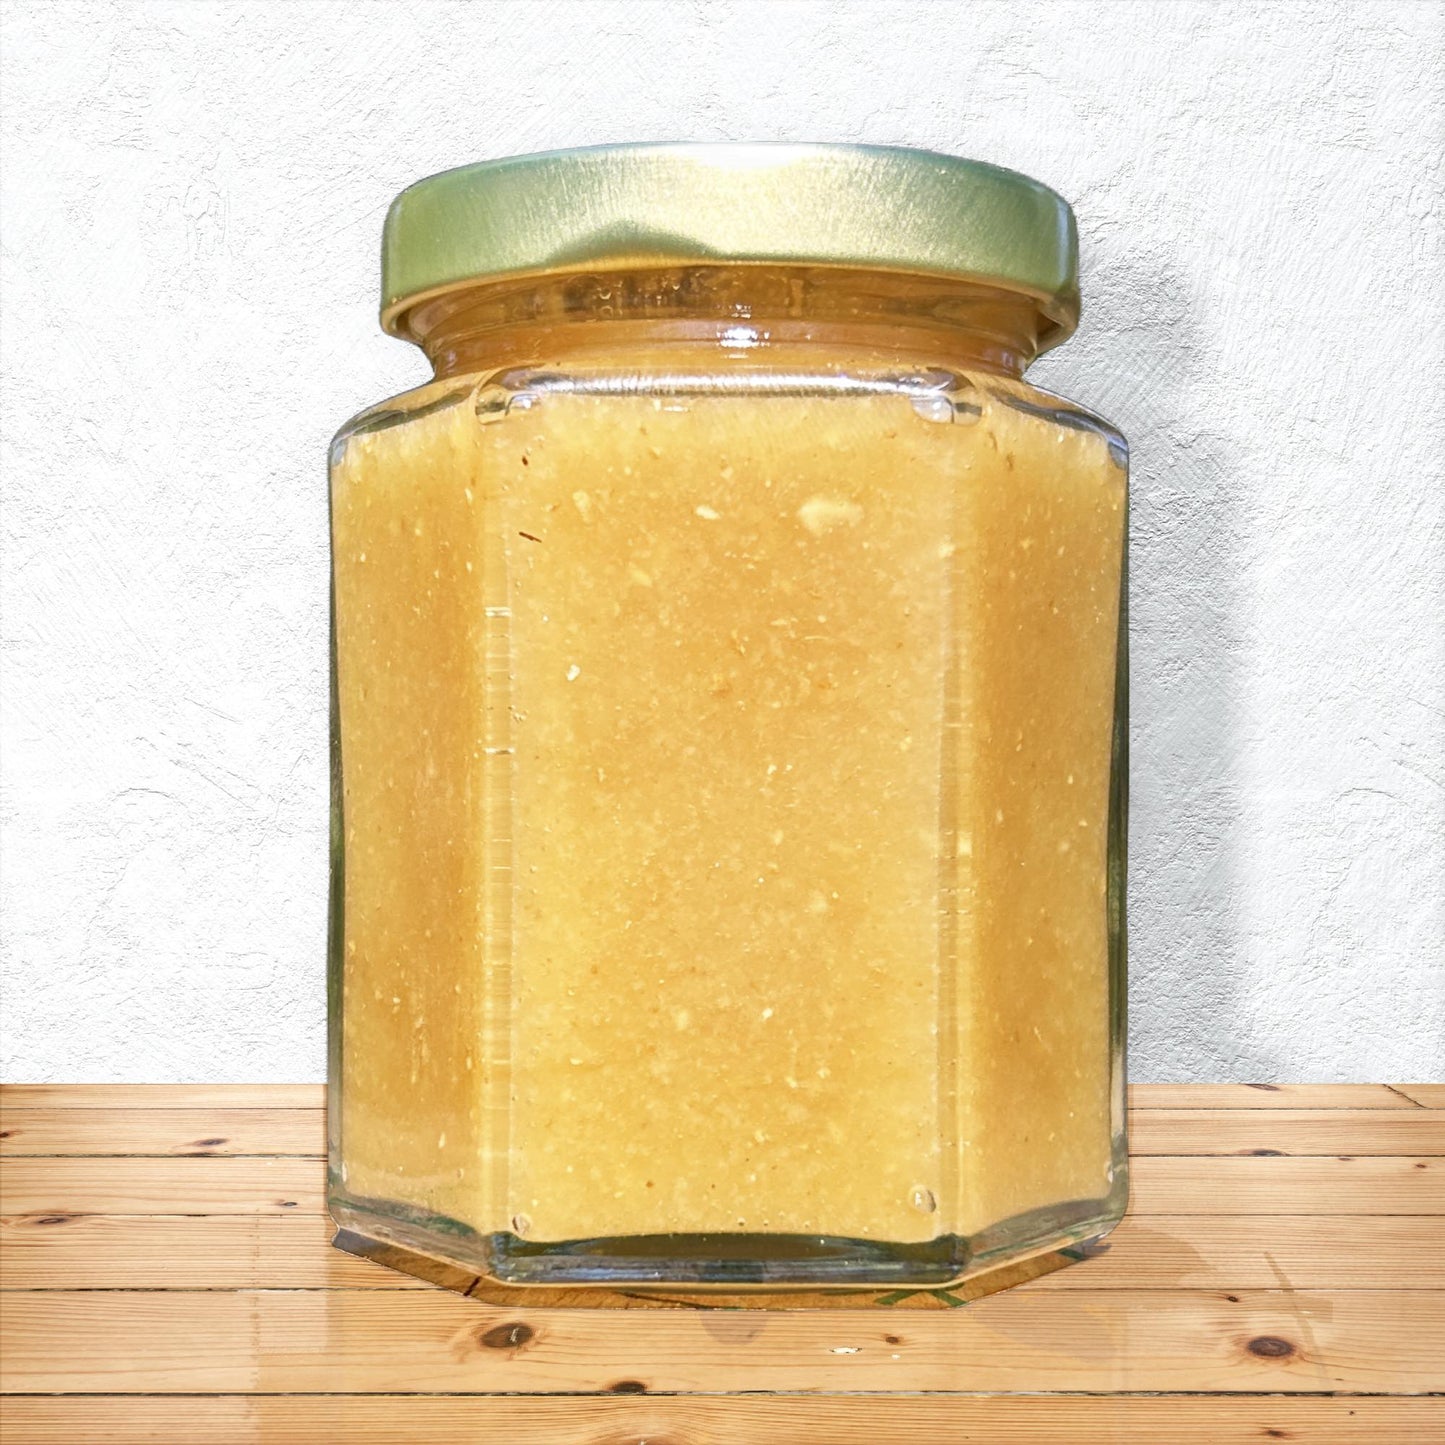 Seasonal ginger honey